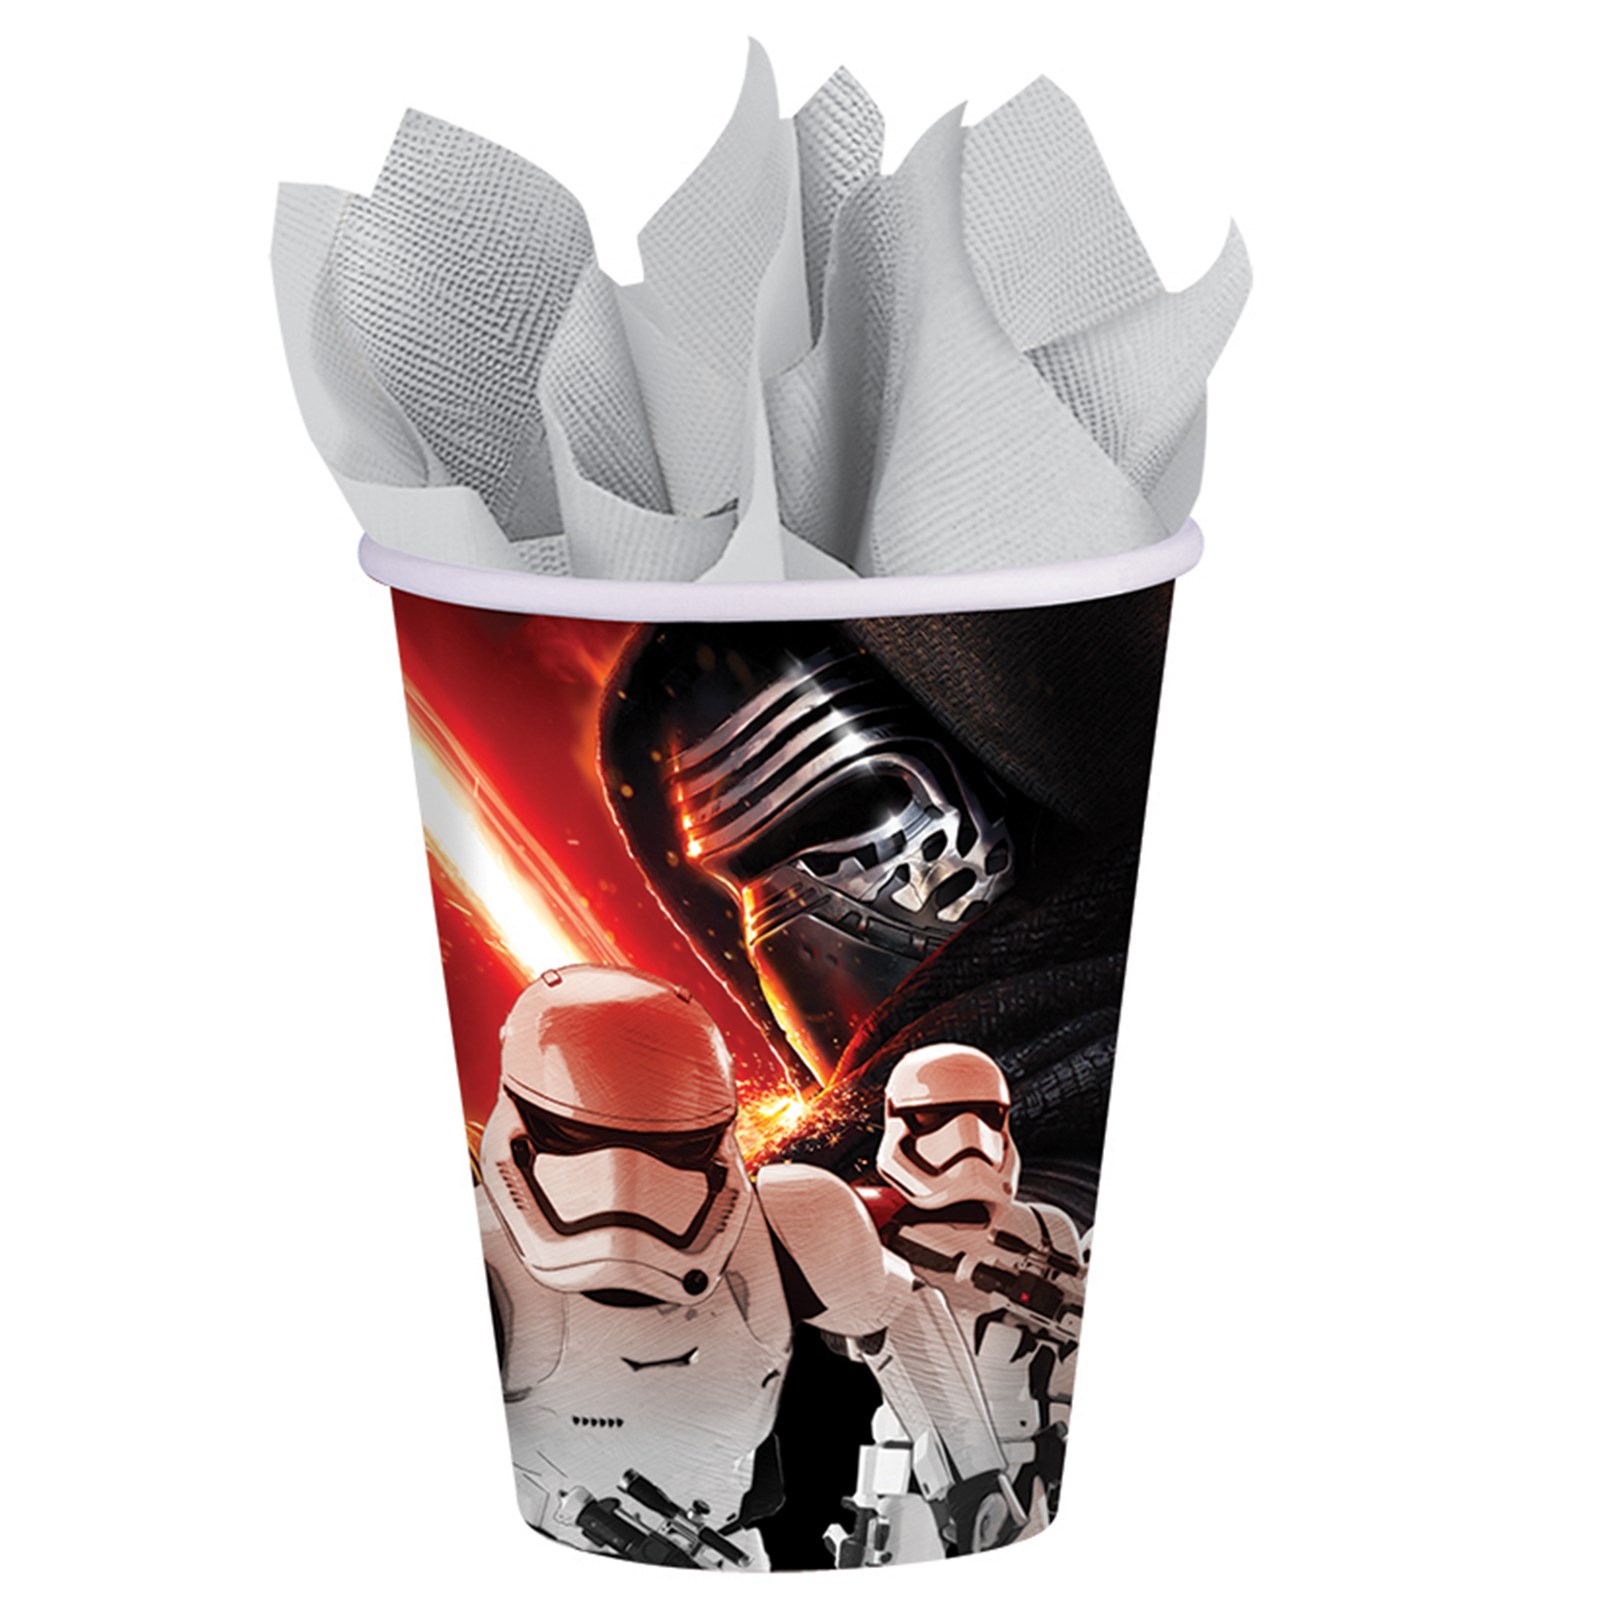 Star Wars 7 9 oz. Paper Cups